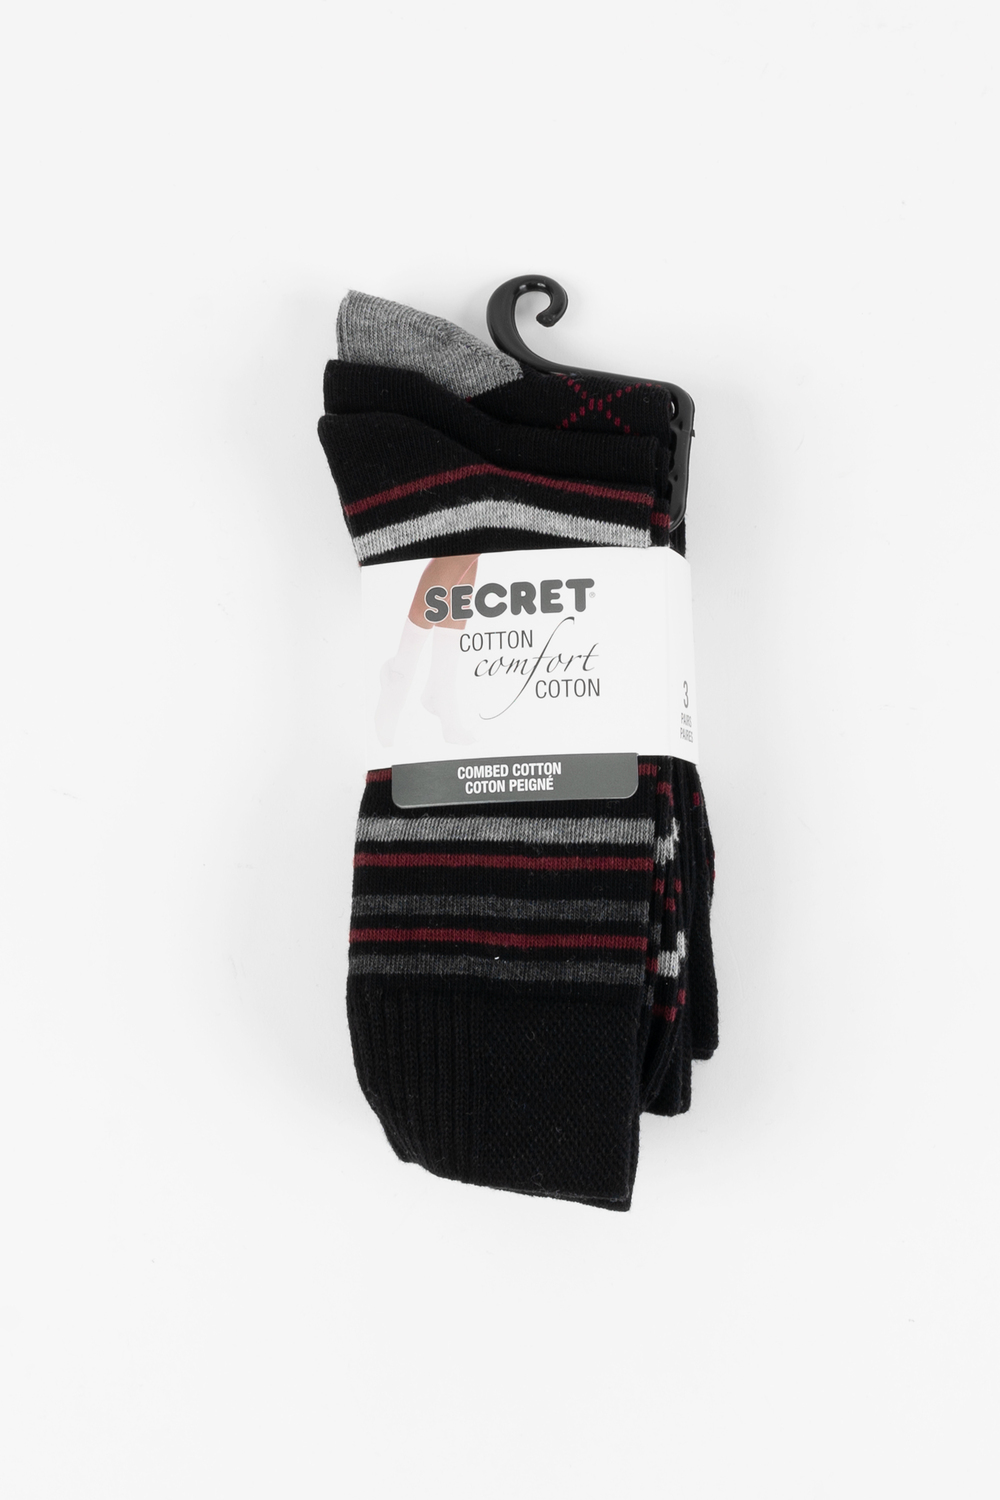 Secret - Chaussettes habillées en coton peigné, 3 paires